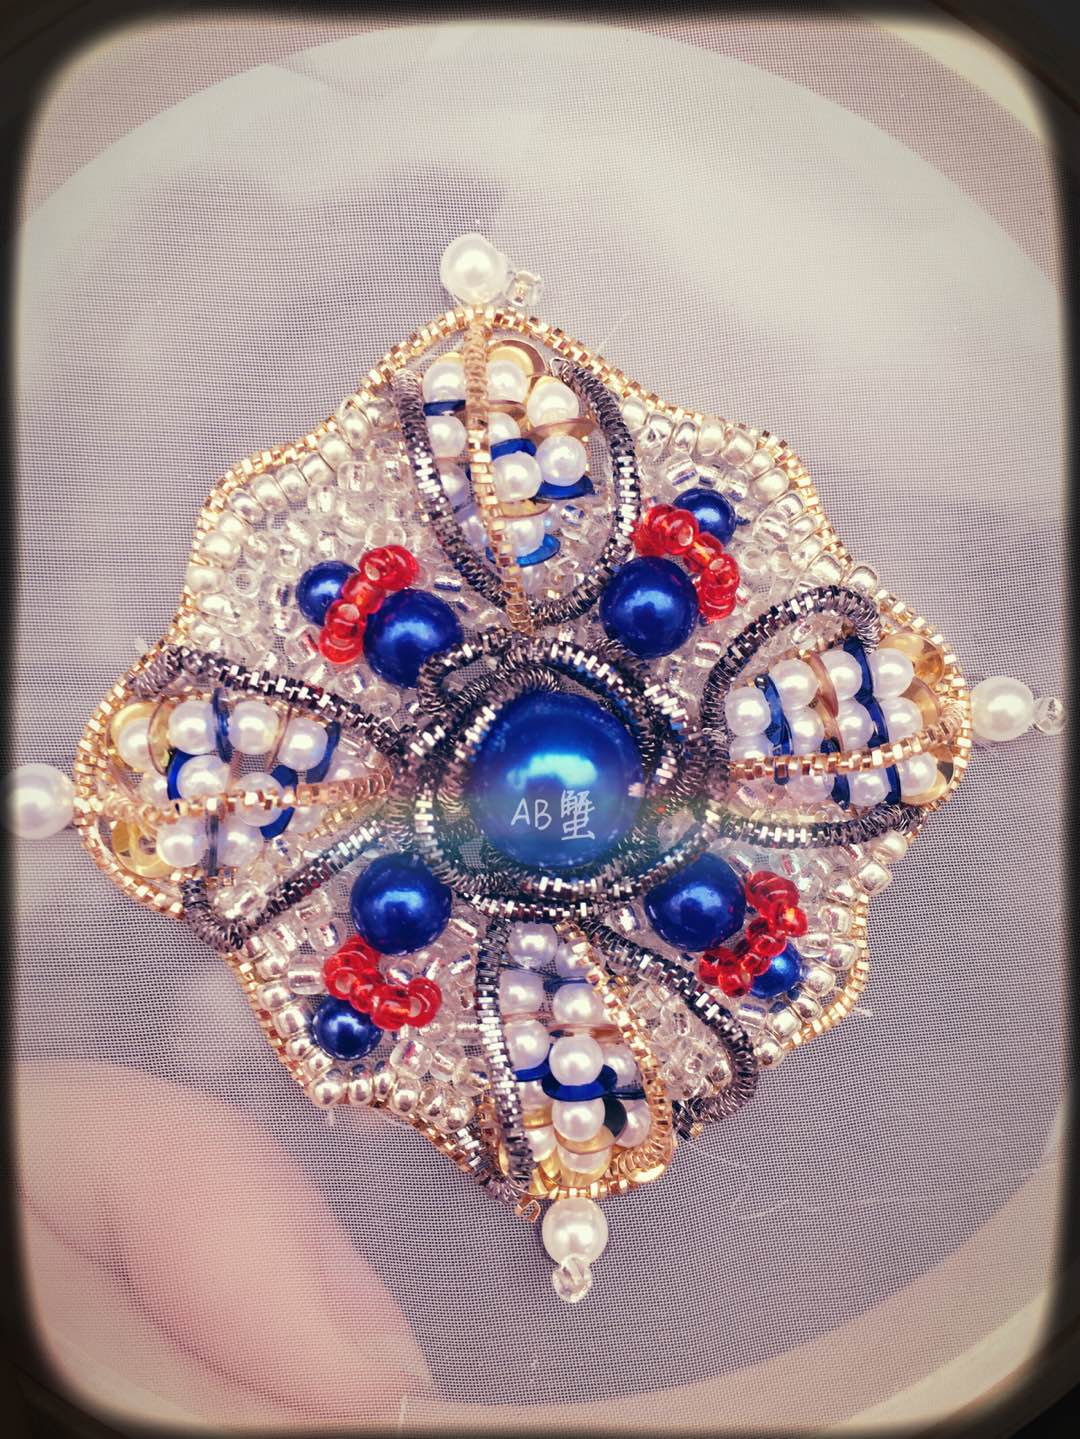 作品采用宝石蓝珠加正红珠再搭配金银边，形成复古而充满装饰感的效果。